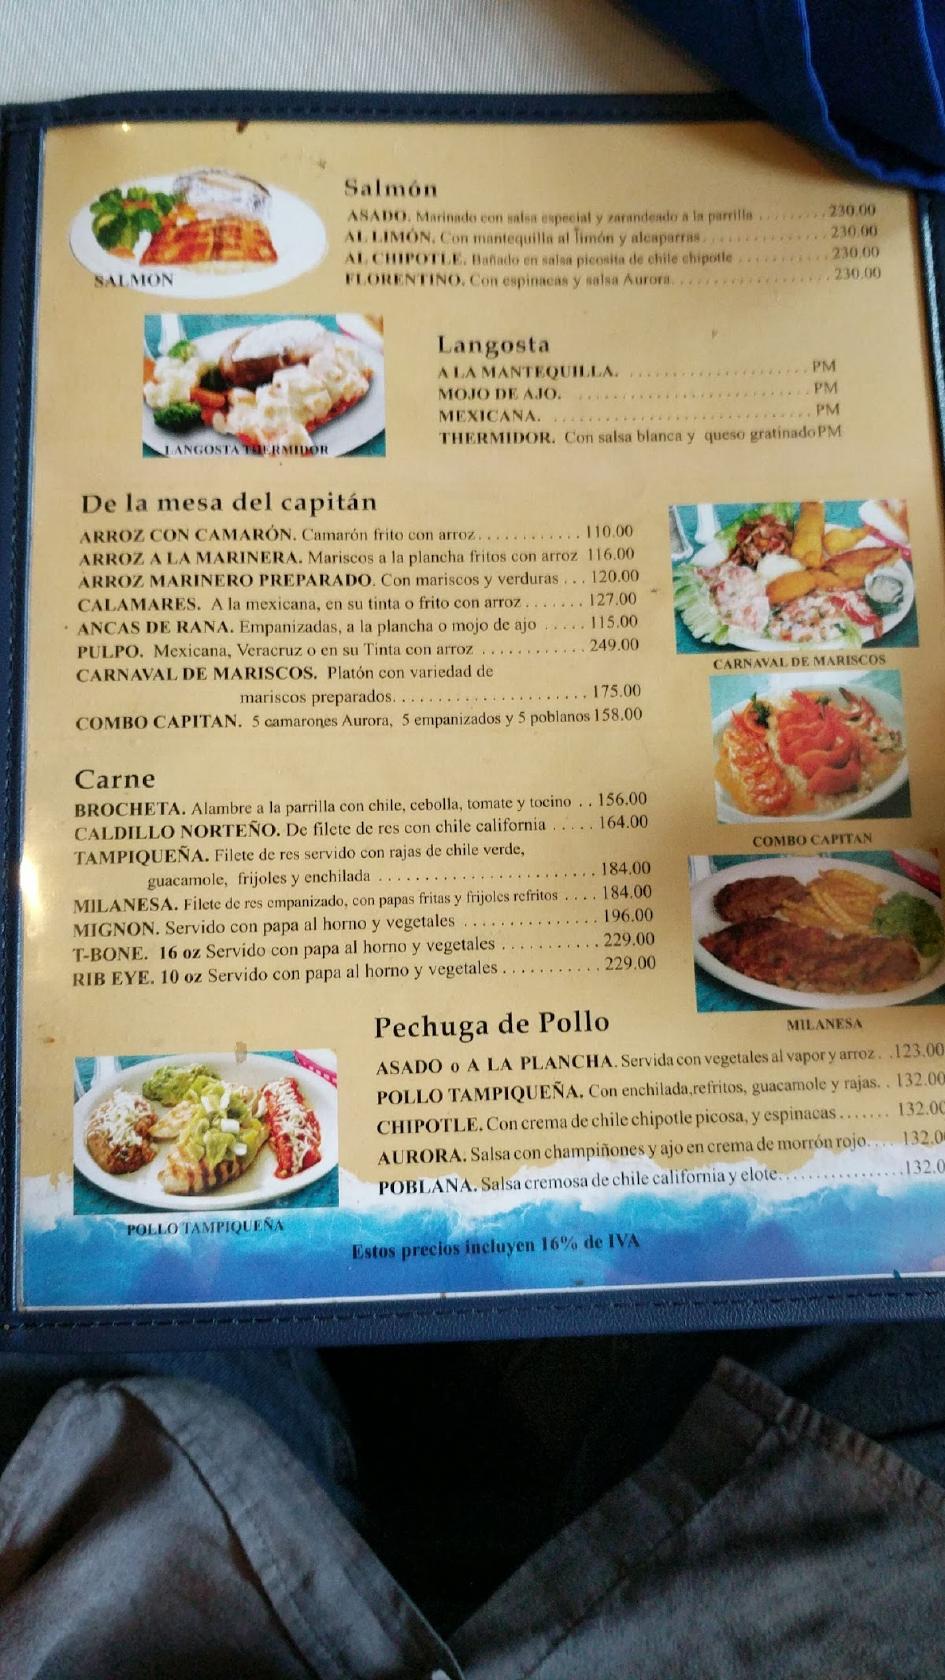 Menu at Mariscos Villa del Mar restaurant, Ciudad Juarez, Avénida dé las  Américas 1400